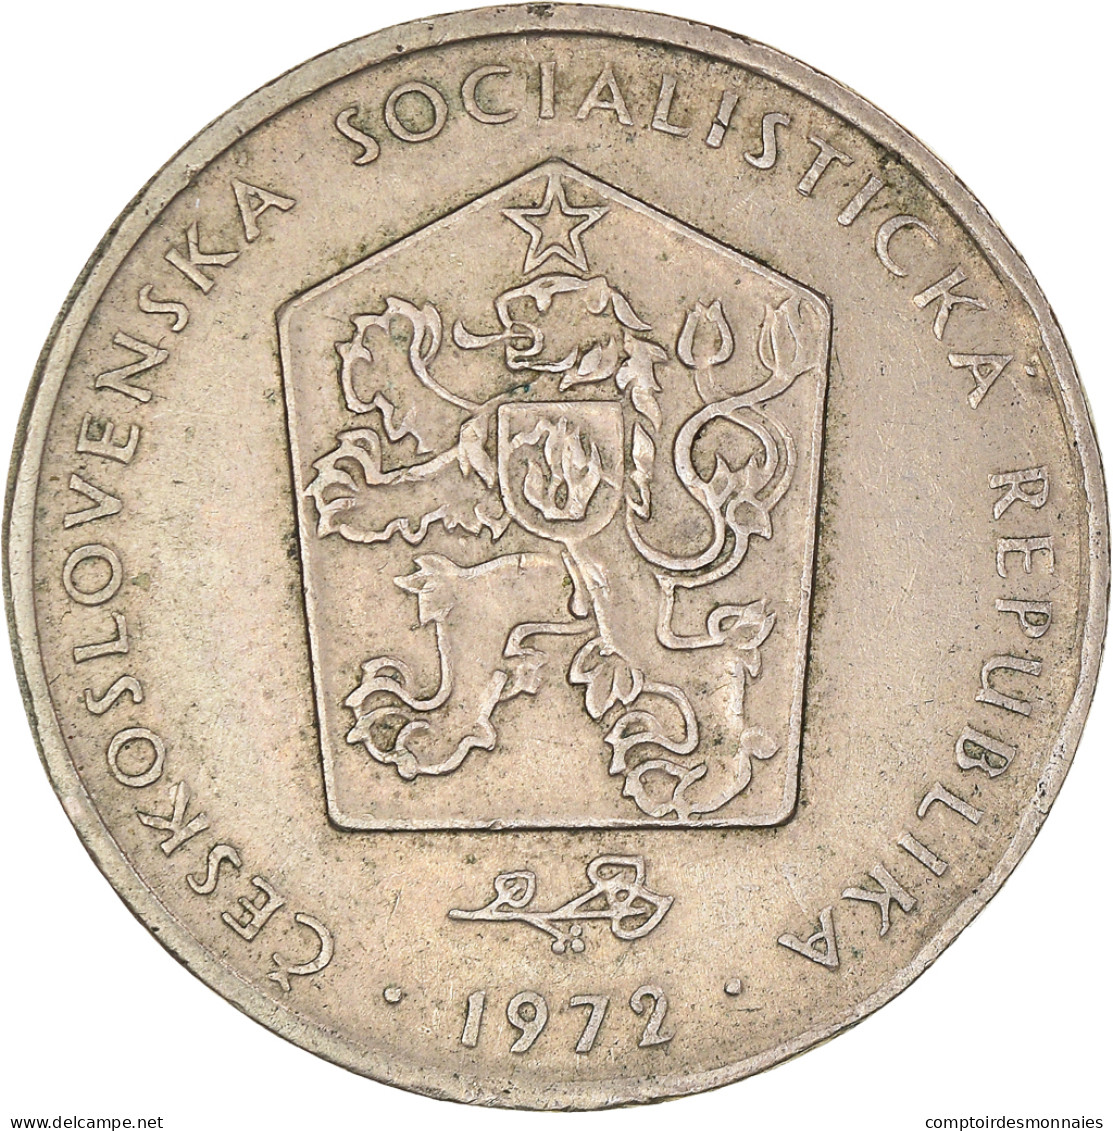 Monnaie, Tchécoslovaquie, 2 Koruny, 1972, TTB+, Cupro-nickel, KM:75 - Tchécoslovaquie